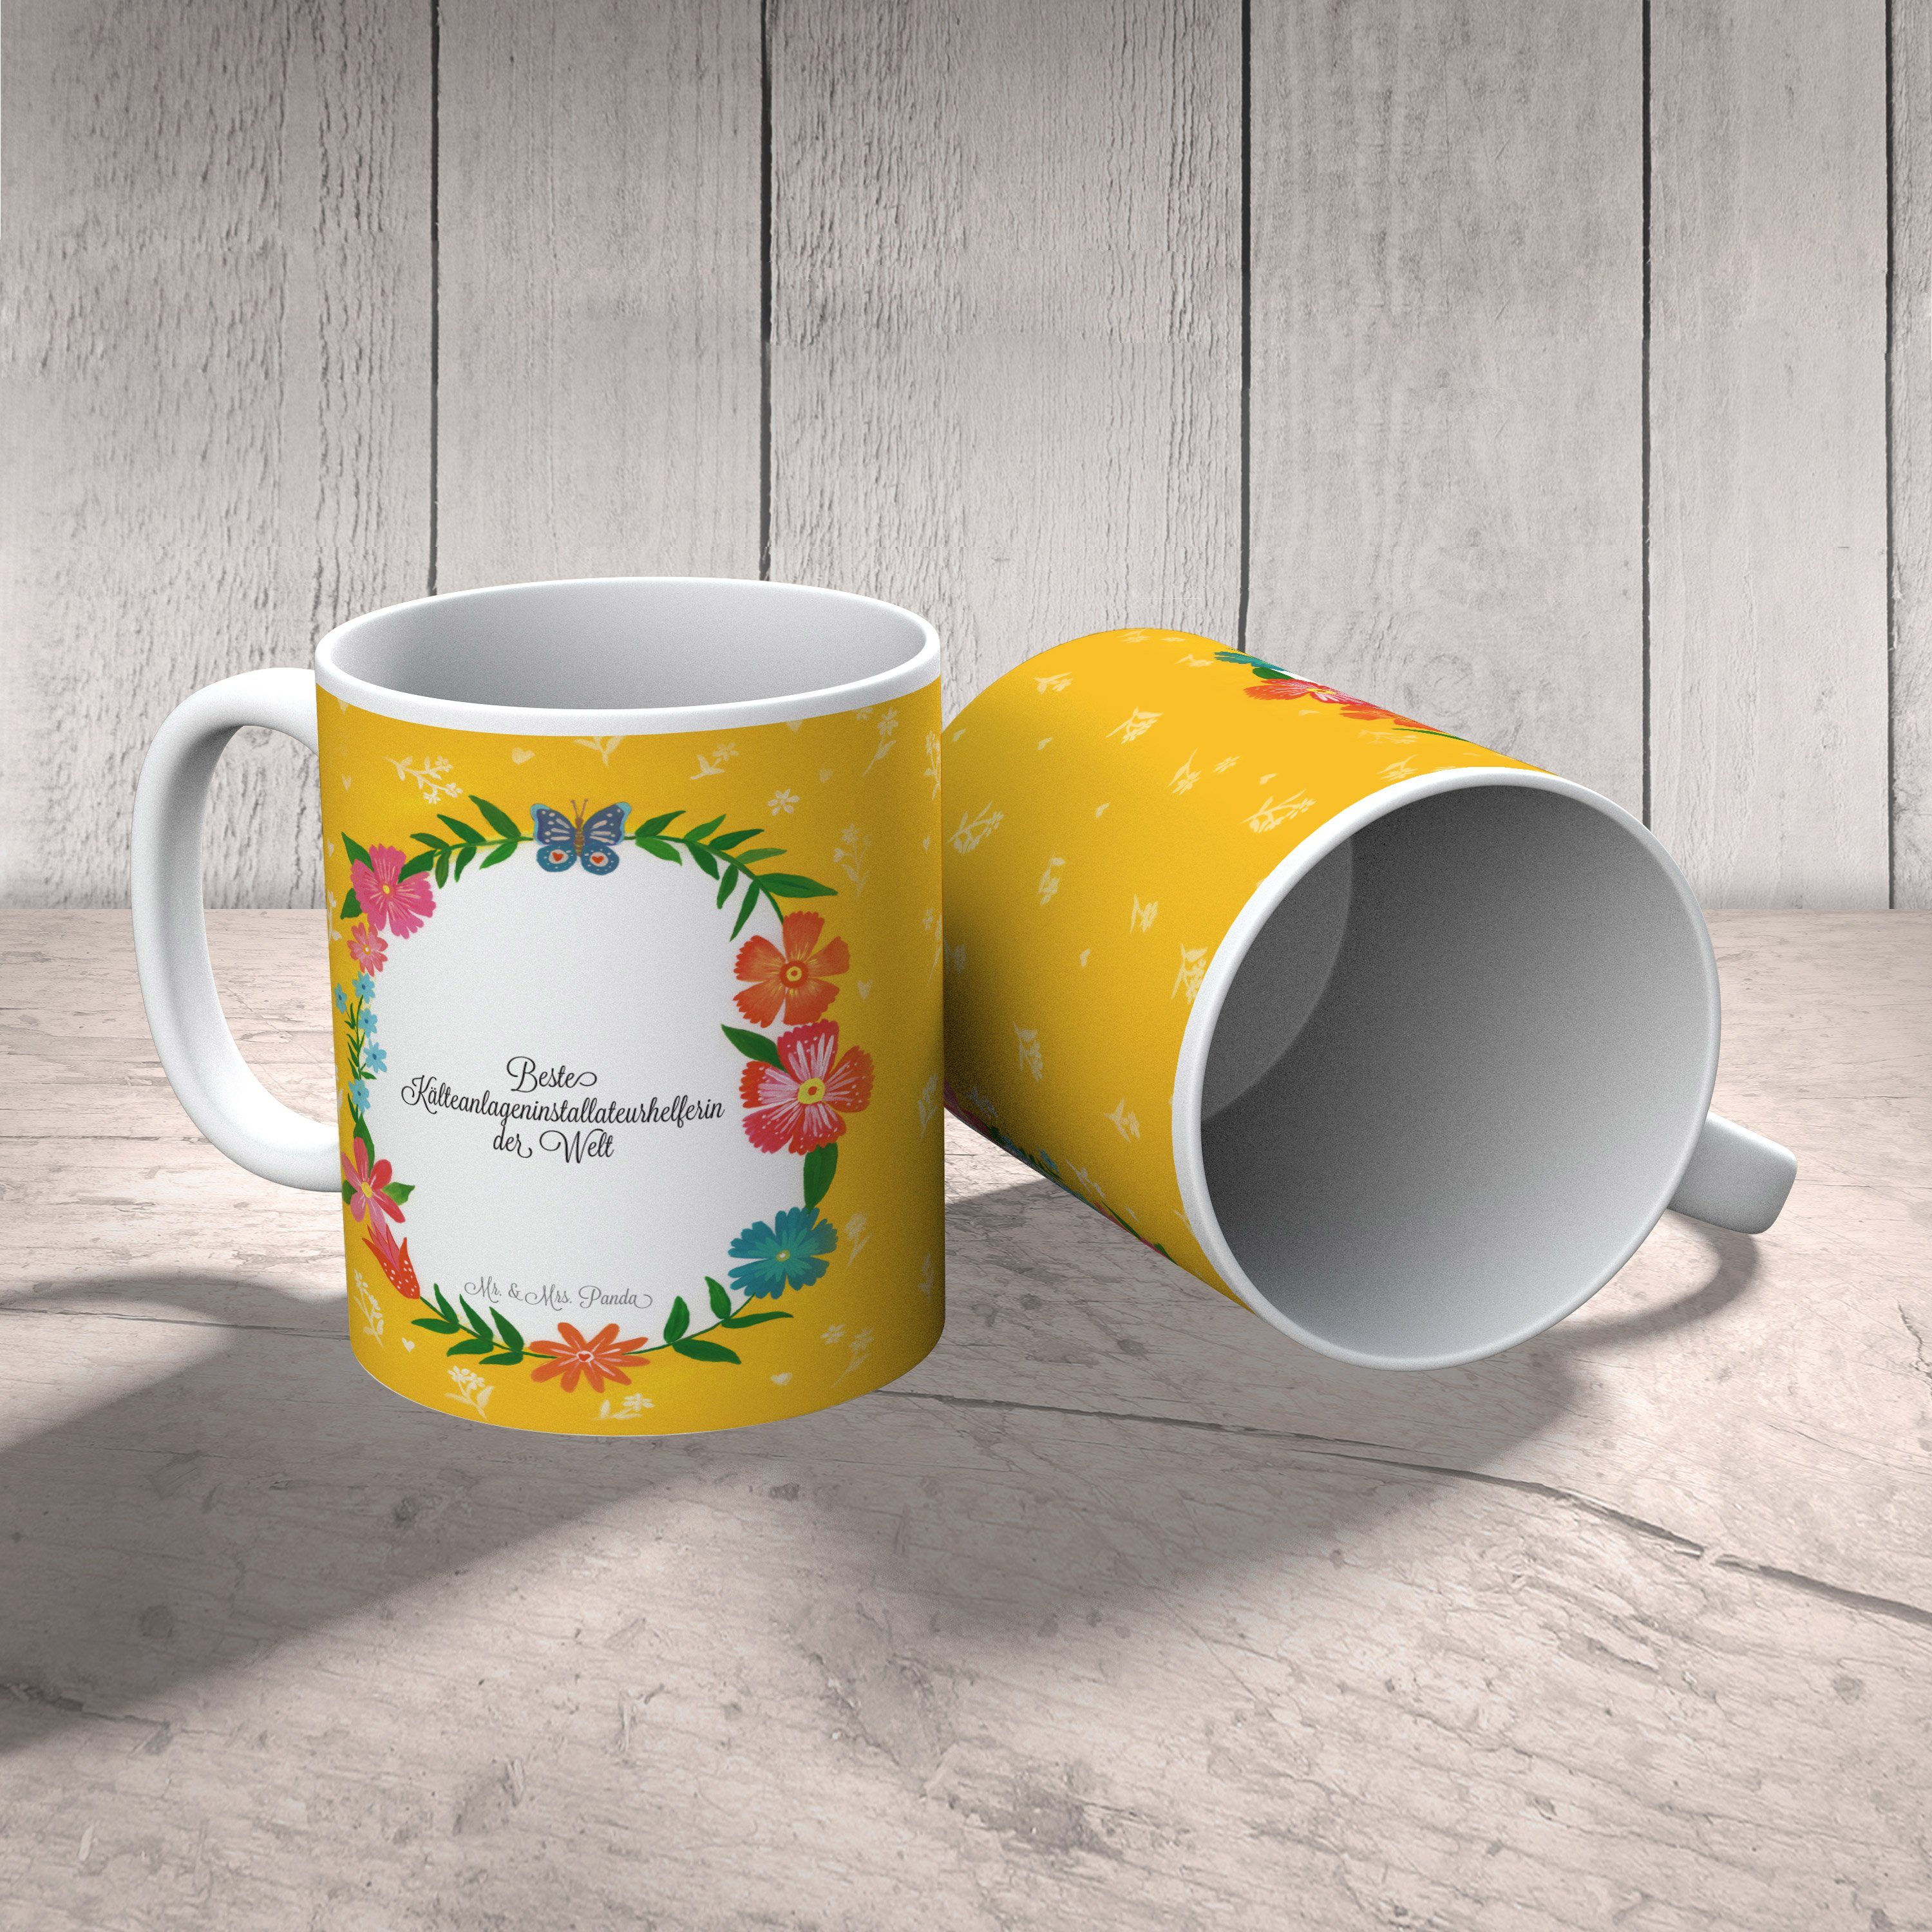 Mr. & Mrs. Panda Tasse Kälteanlageninstallateurhelferin - Keramik Geschenk, Porzellantasse, Geschenk